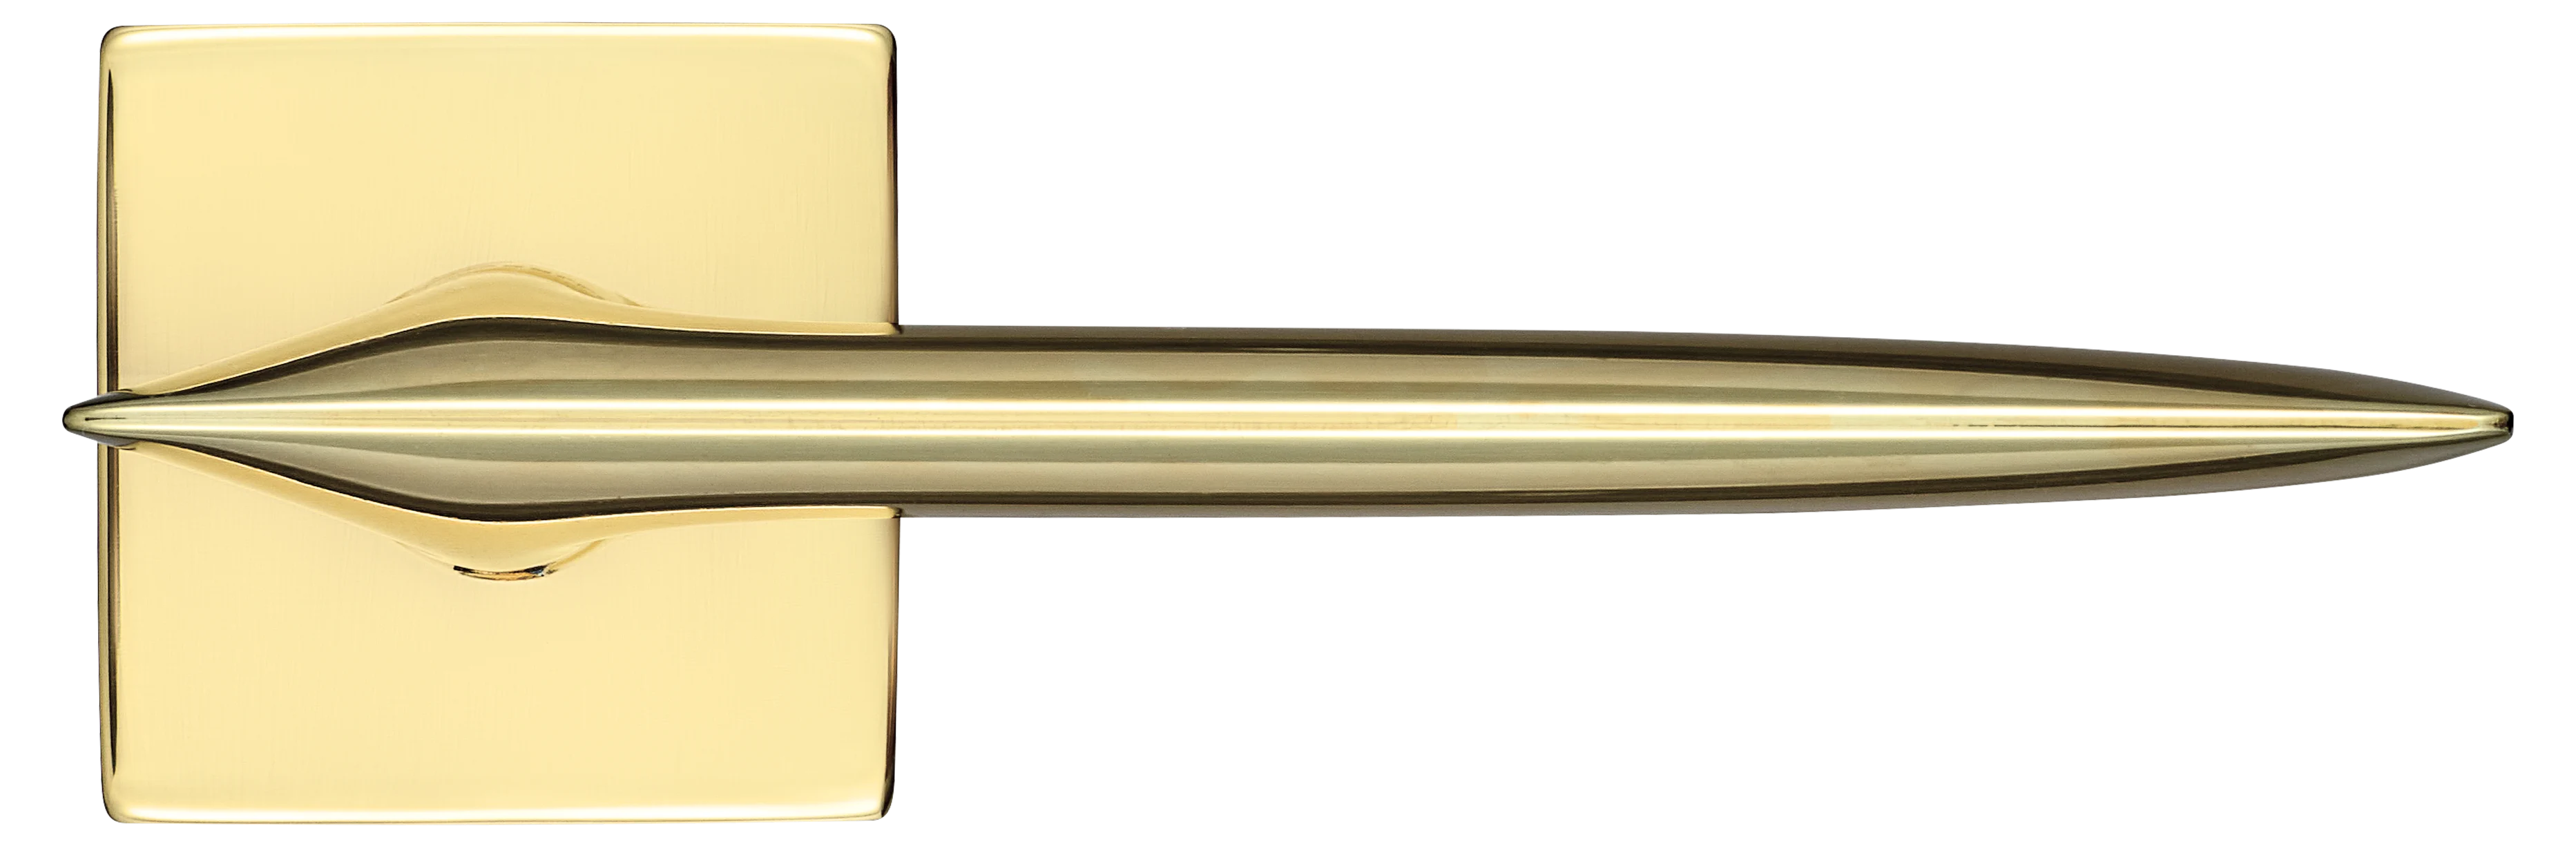 GALACTIC S5 OTL, ручка дверная, цвет -  золото фото купить в Твери